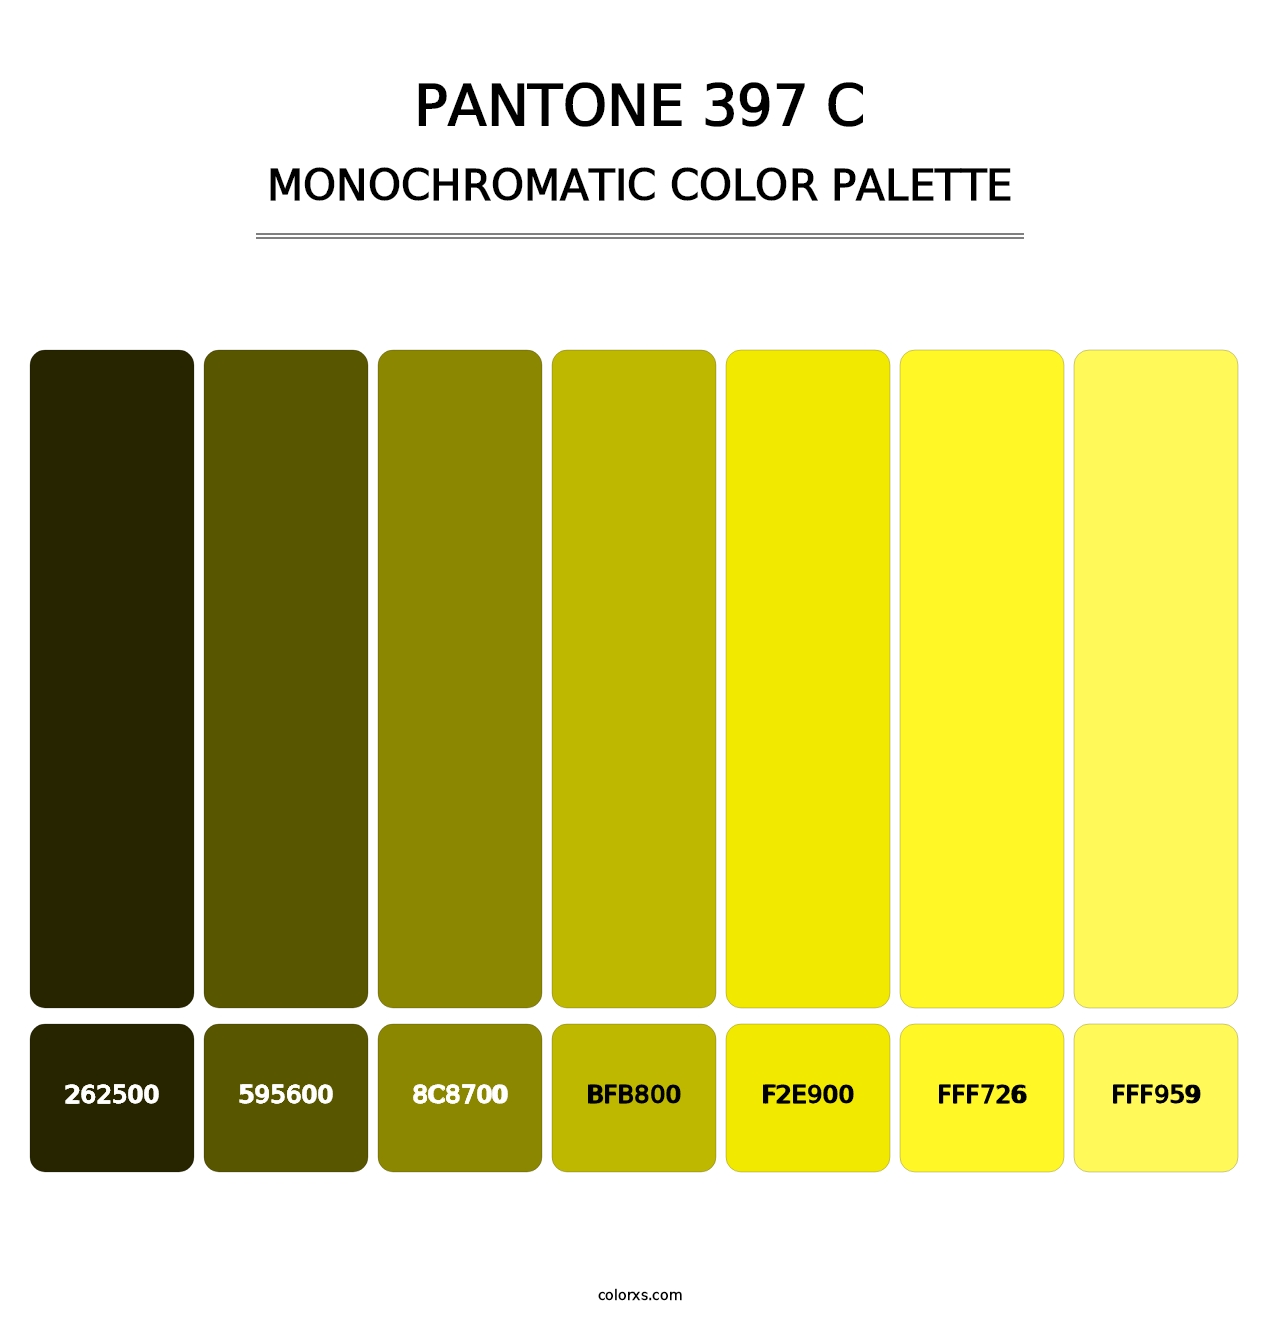 PANTONE 397 C - Monochromatic Color Palette